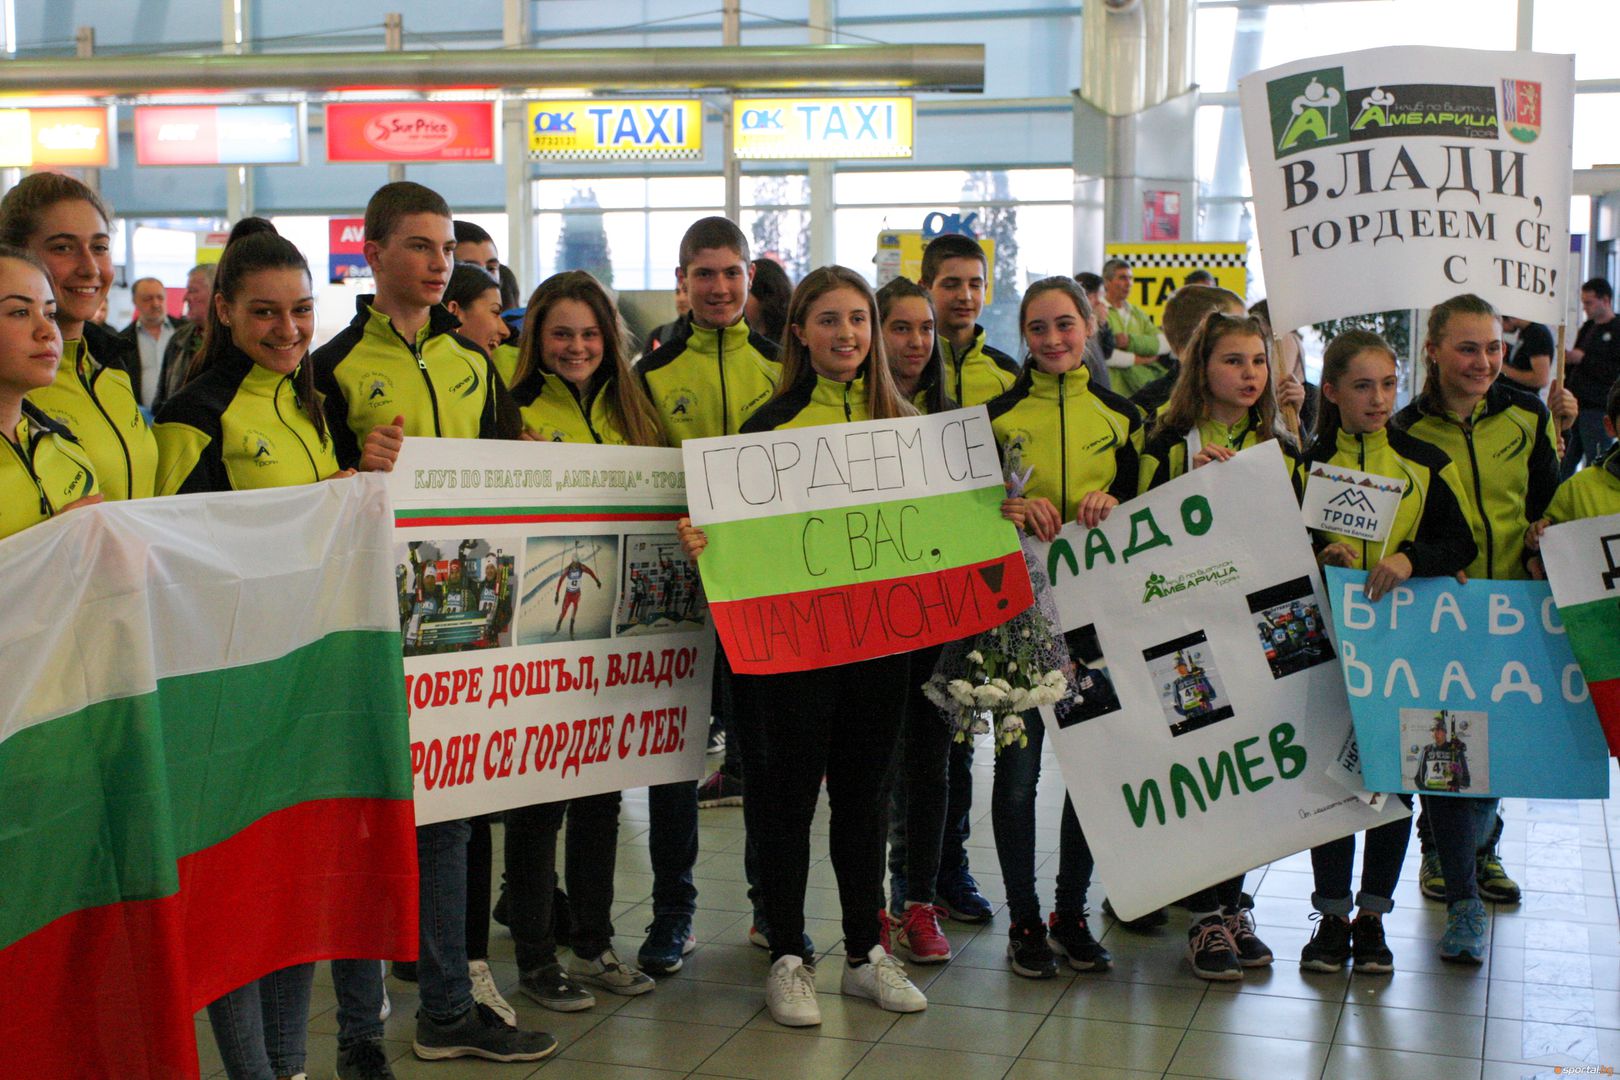 Десетки посрещнаха Владимир Илиев на летище София